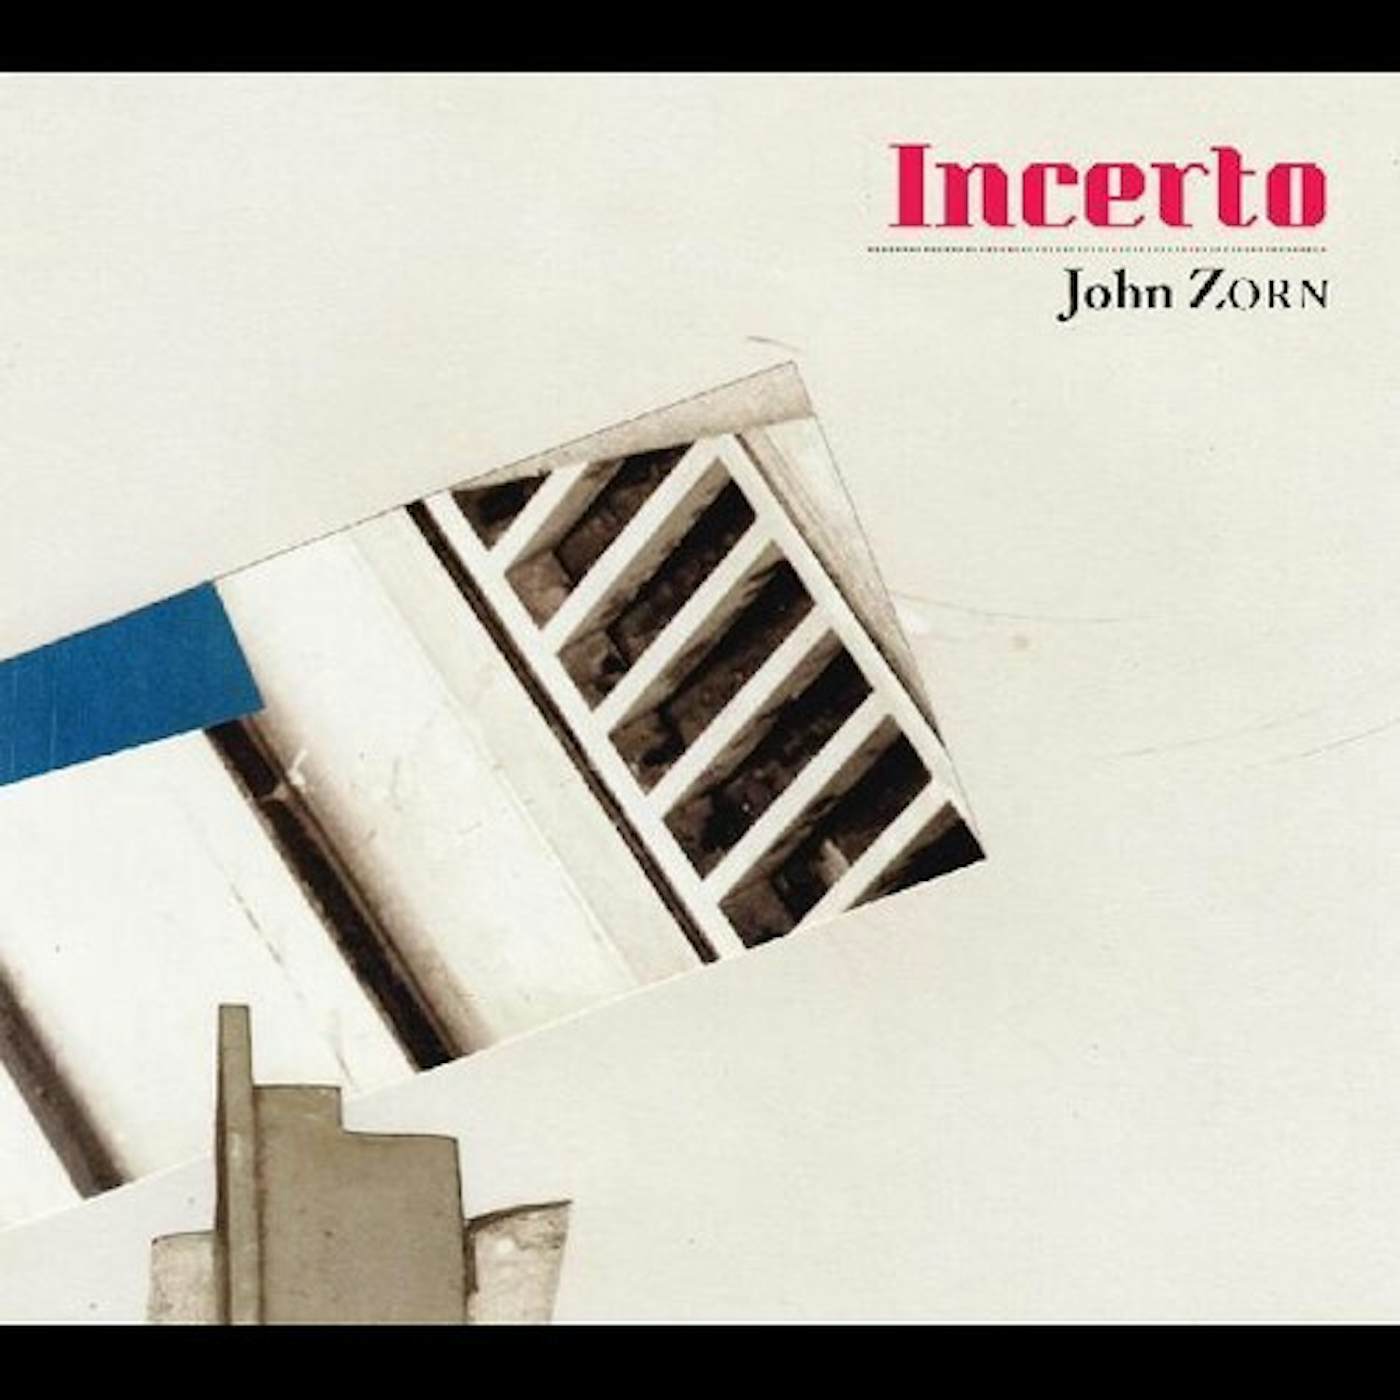 John Zorn INCERTO CD